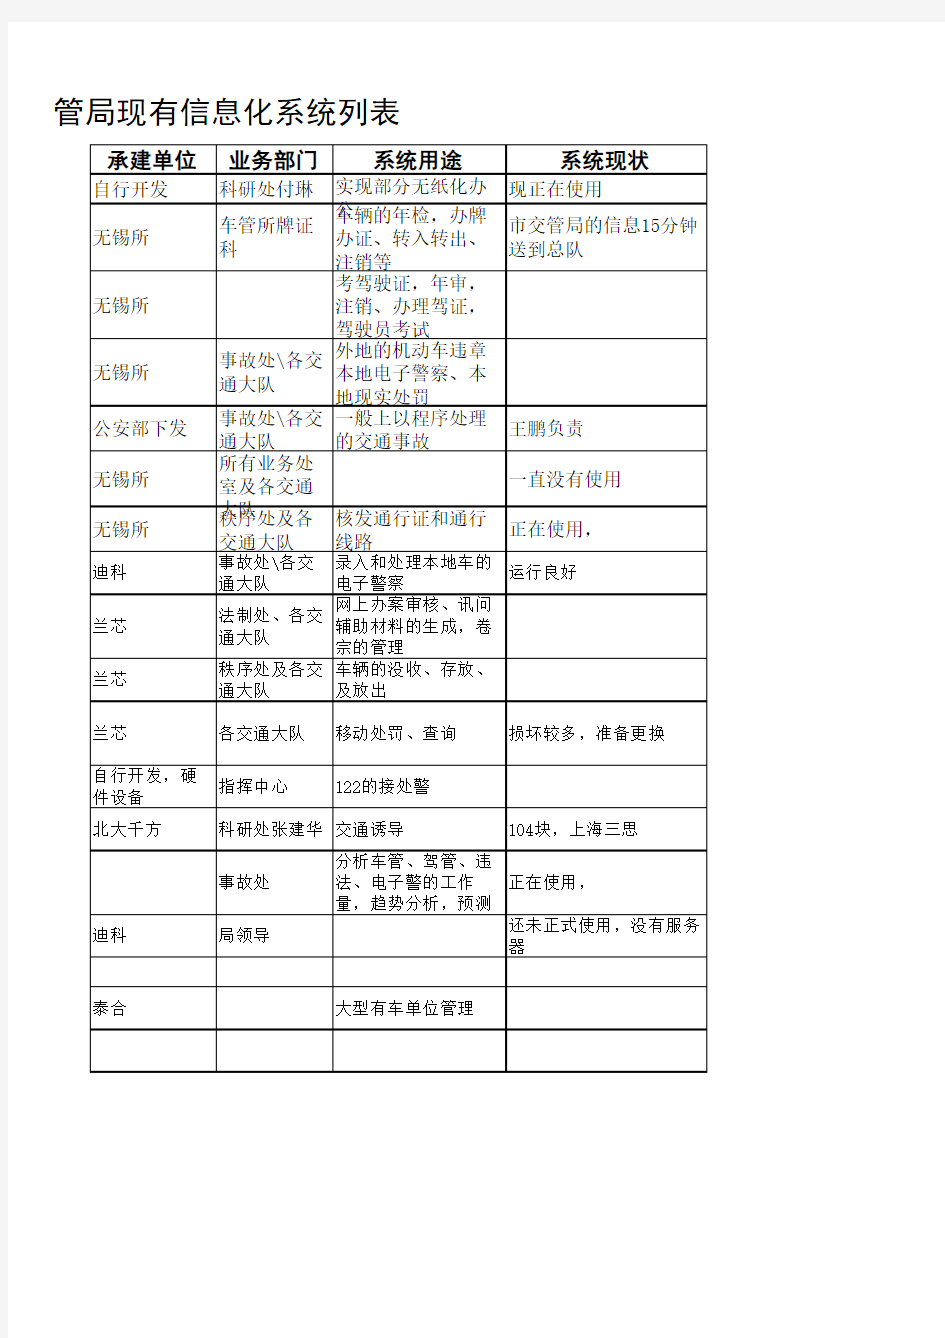 武汉市交管局现有信息化系统列表